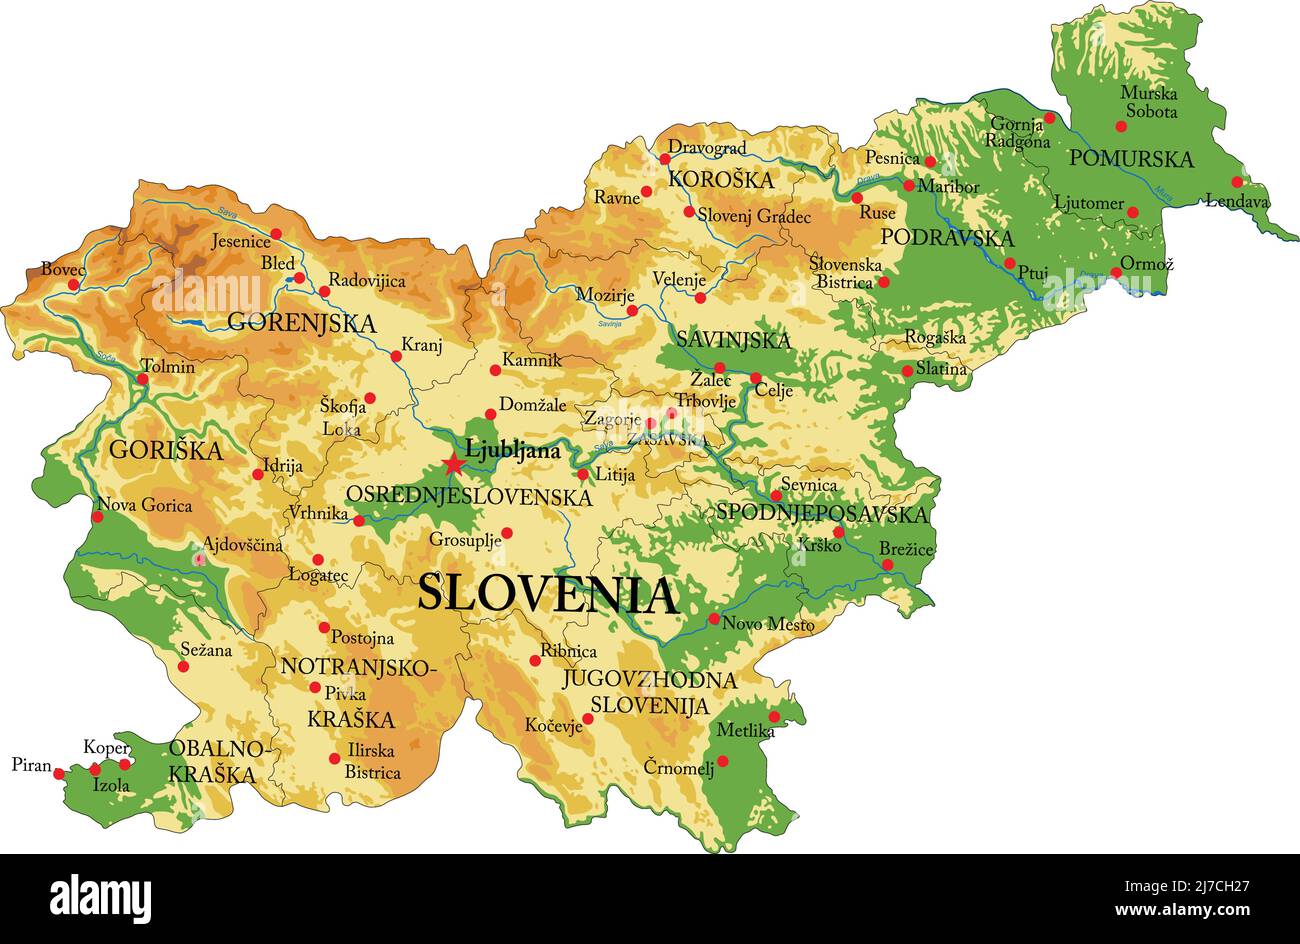 Sehr detaillierte physische Karte von Slowenien, im Vektorformat, mit allen Reliefformen, Regionen und großen Städten. Stock Vektor